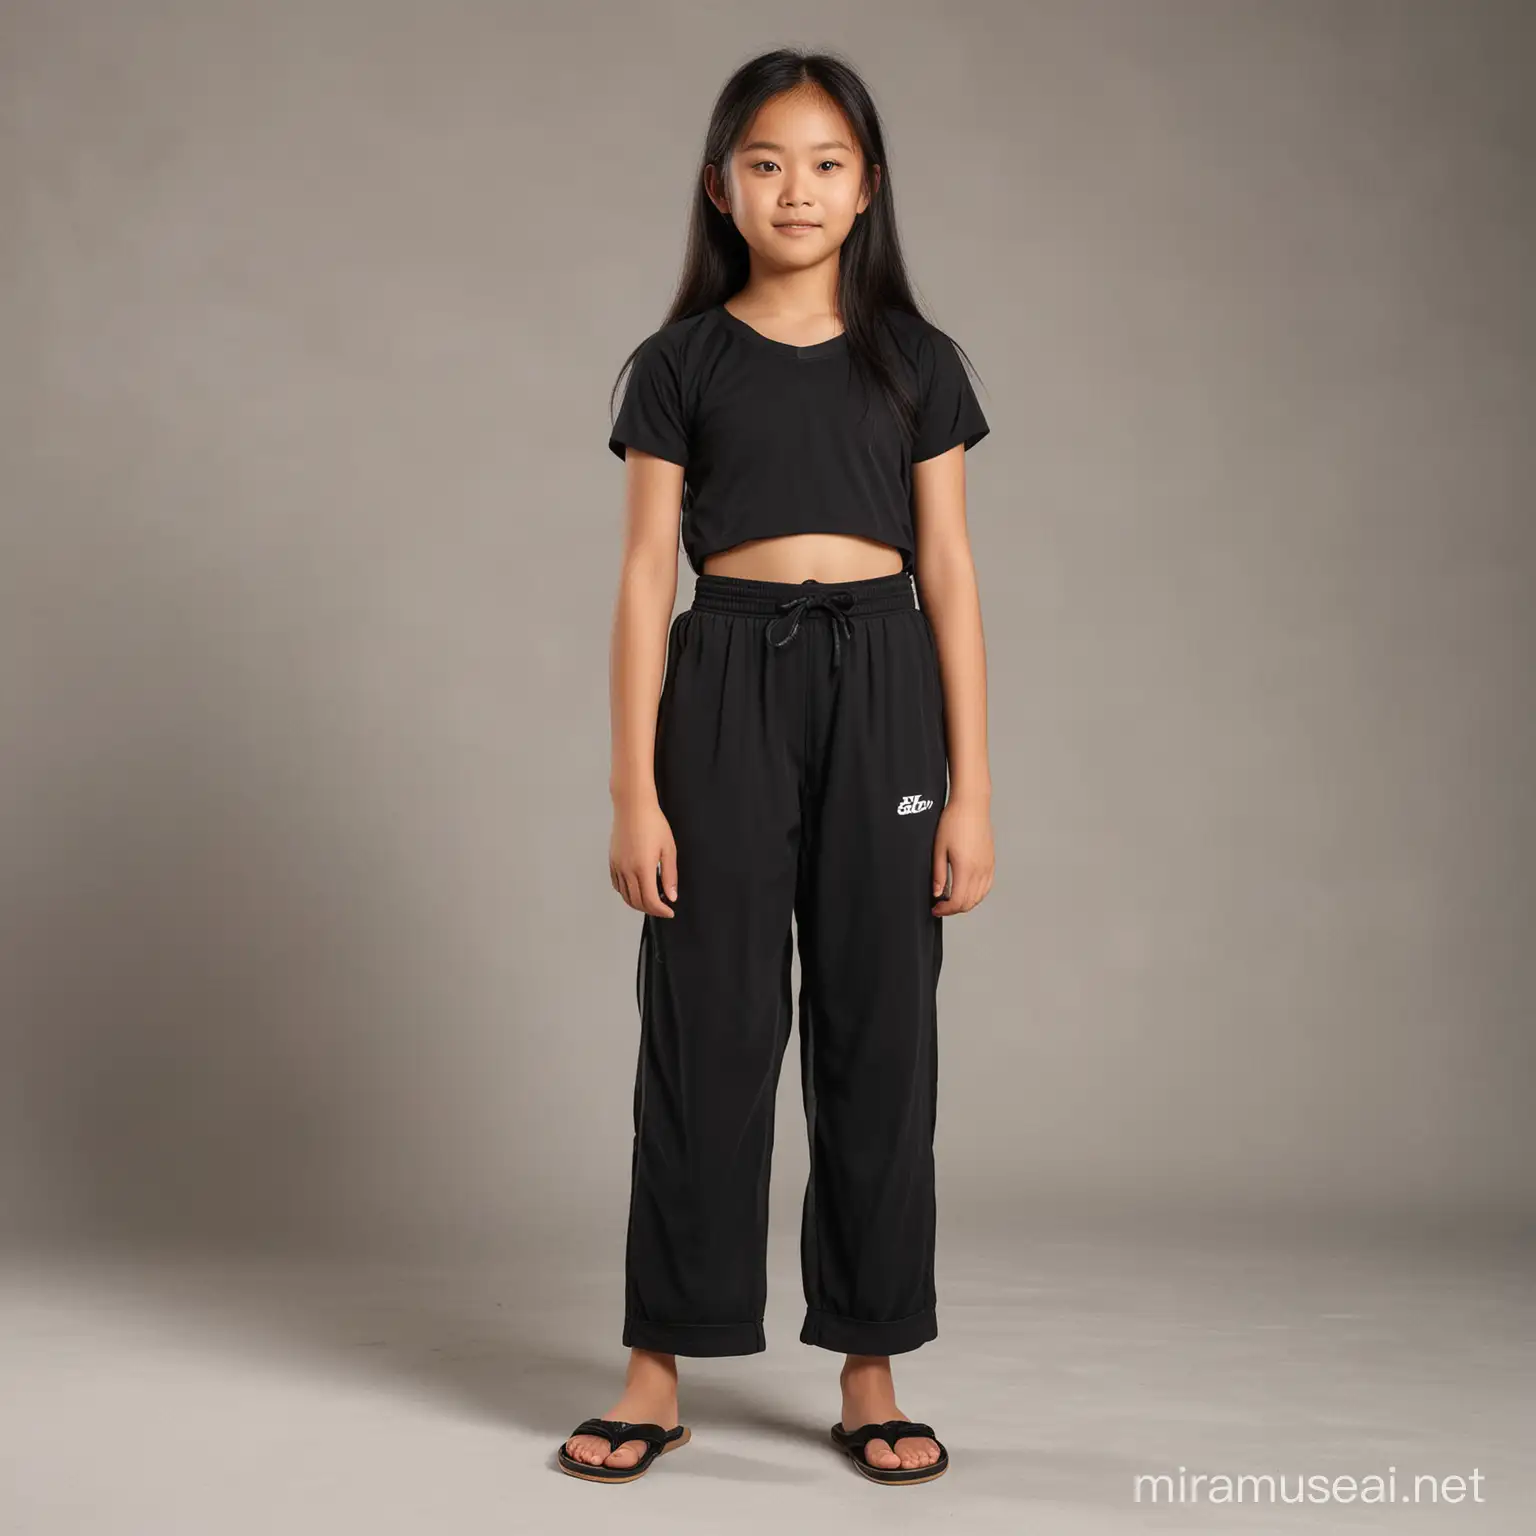 Cho Chang agée de 12 ans , en brasiere de sport noire et culotte de sport noir , tong aux pieds